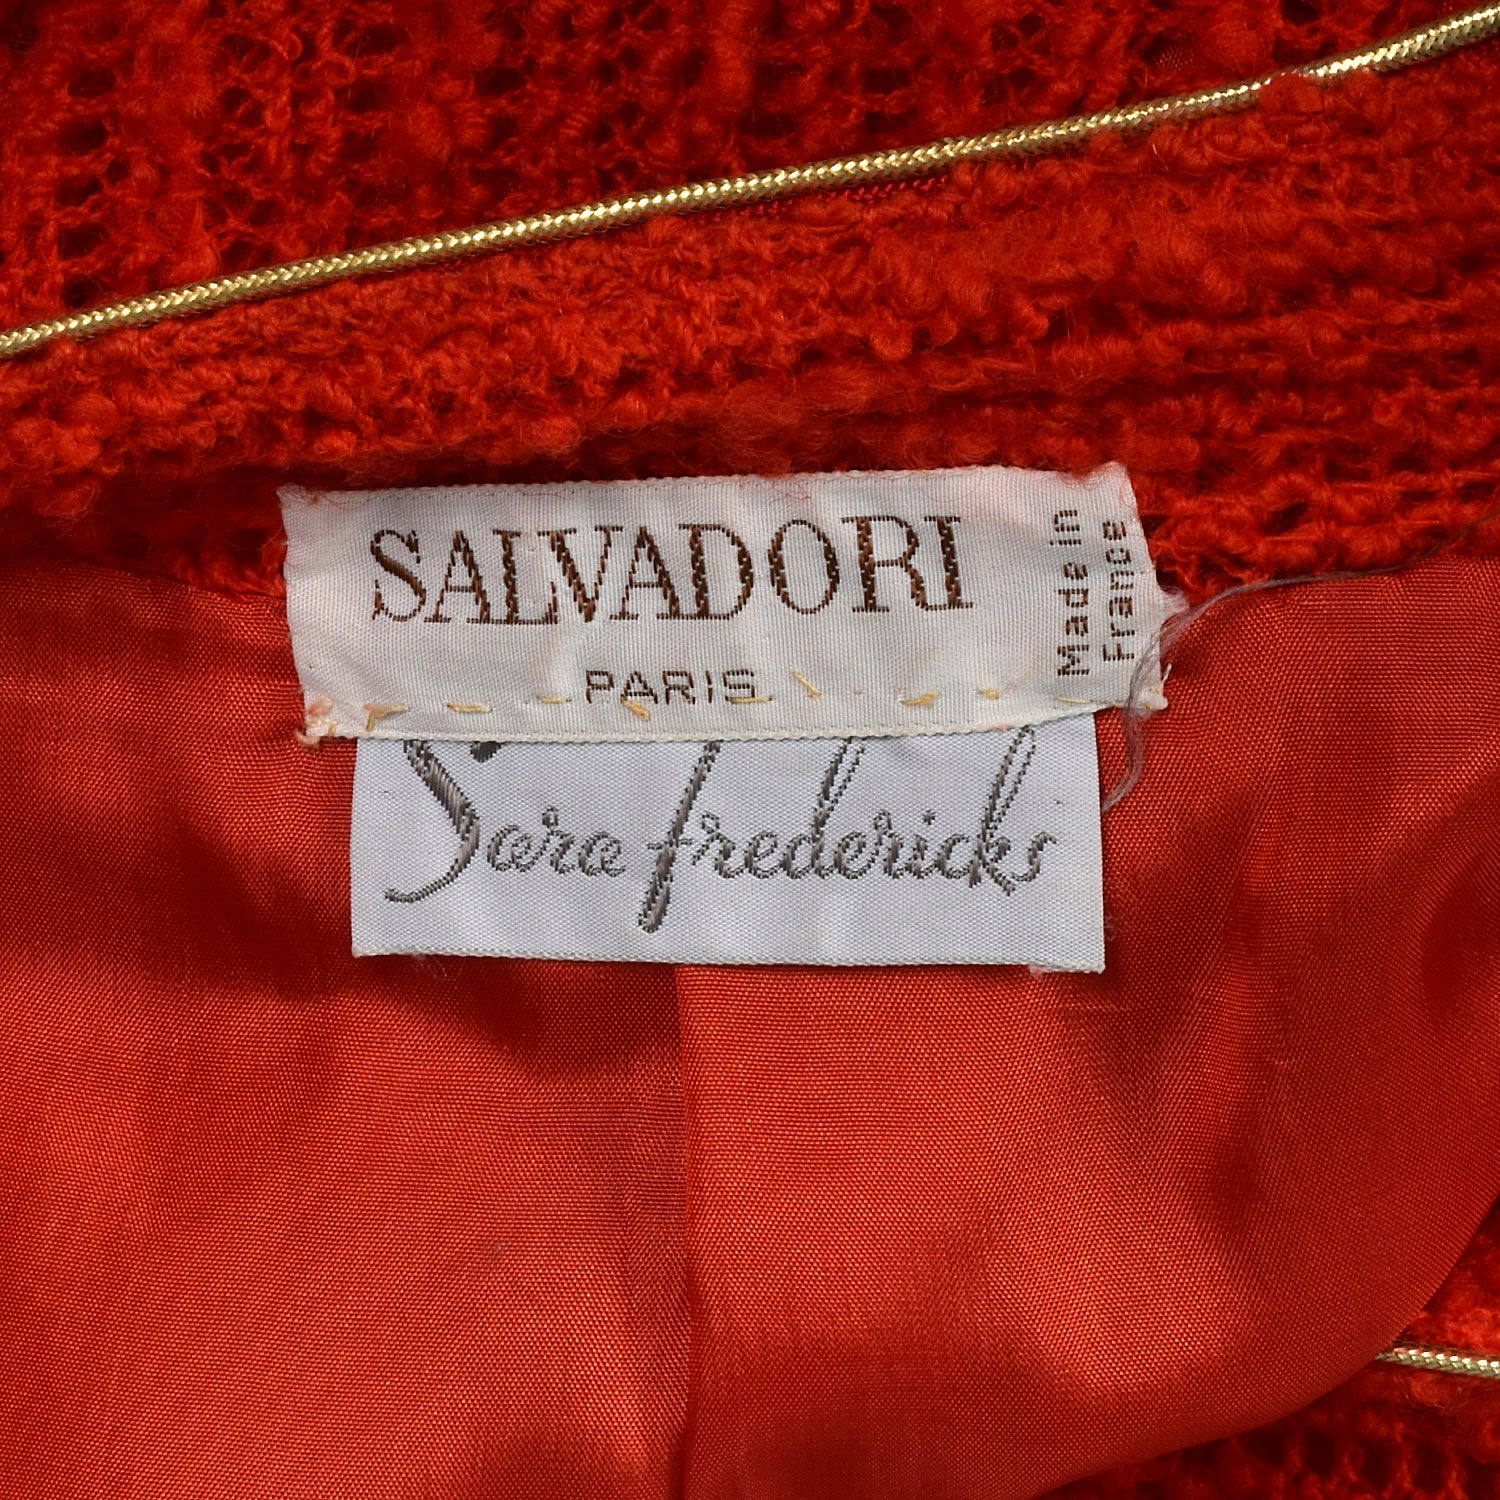 Medium Beni Salvadori Sara Fredericks 1970s Red Open Knit Skirt Suit